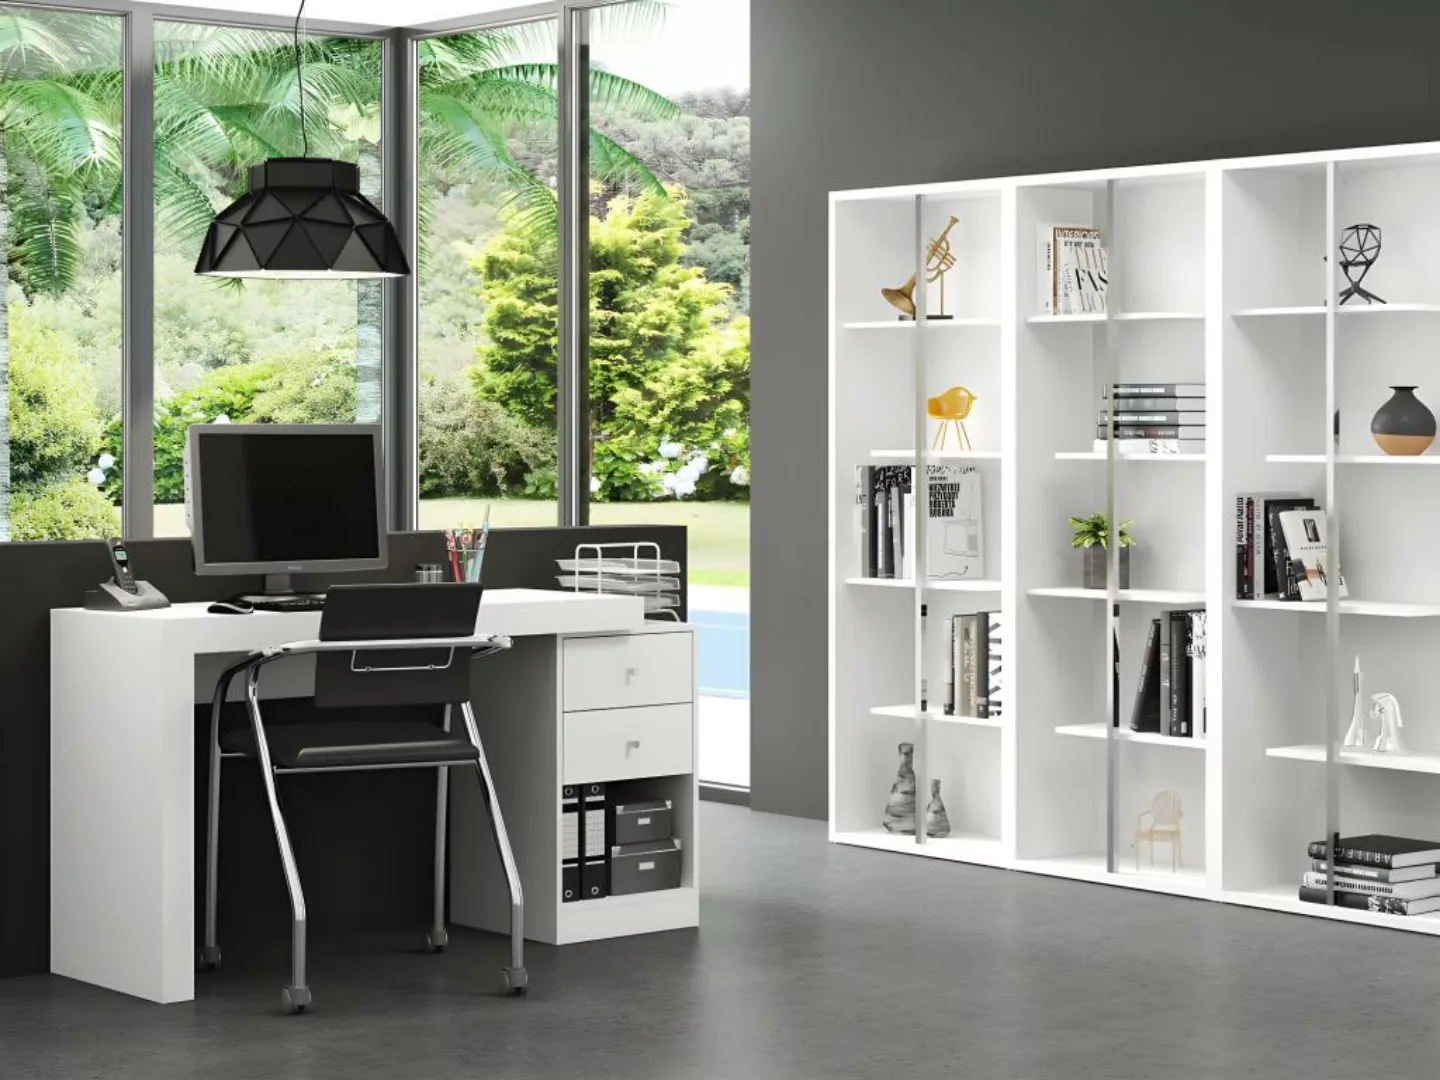 Schreibtisch ausziehbar mit 2 Schubladen & 1 Ablage - Weiß - EVAN günstig online kaufen